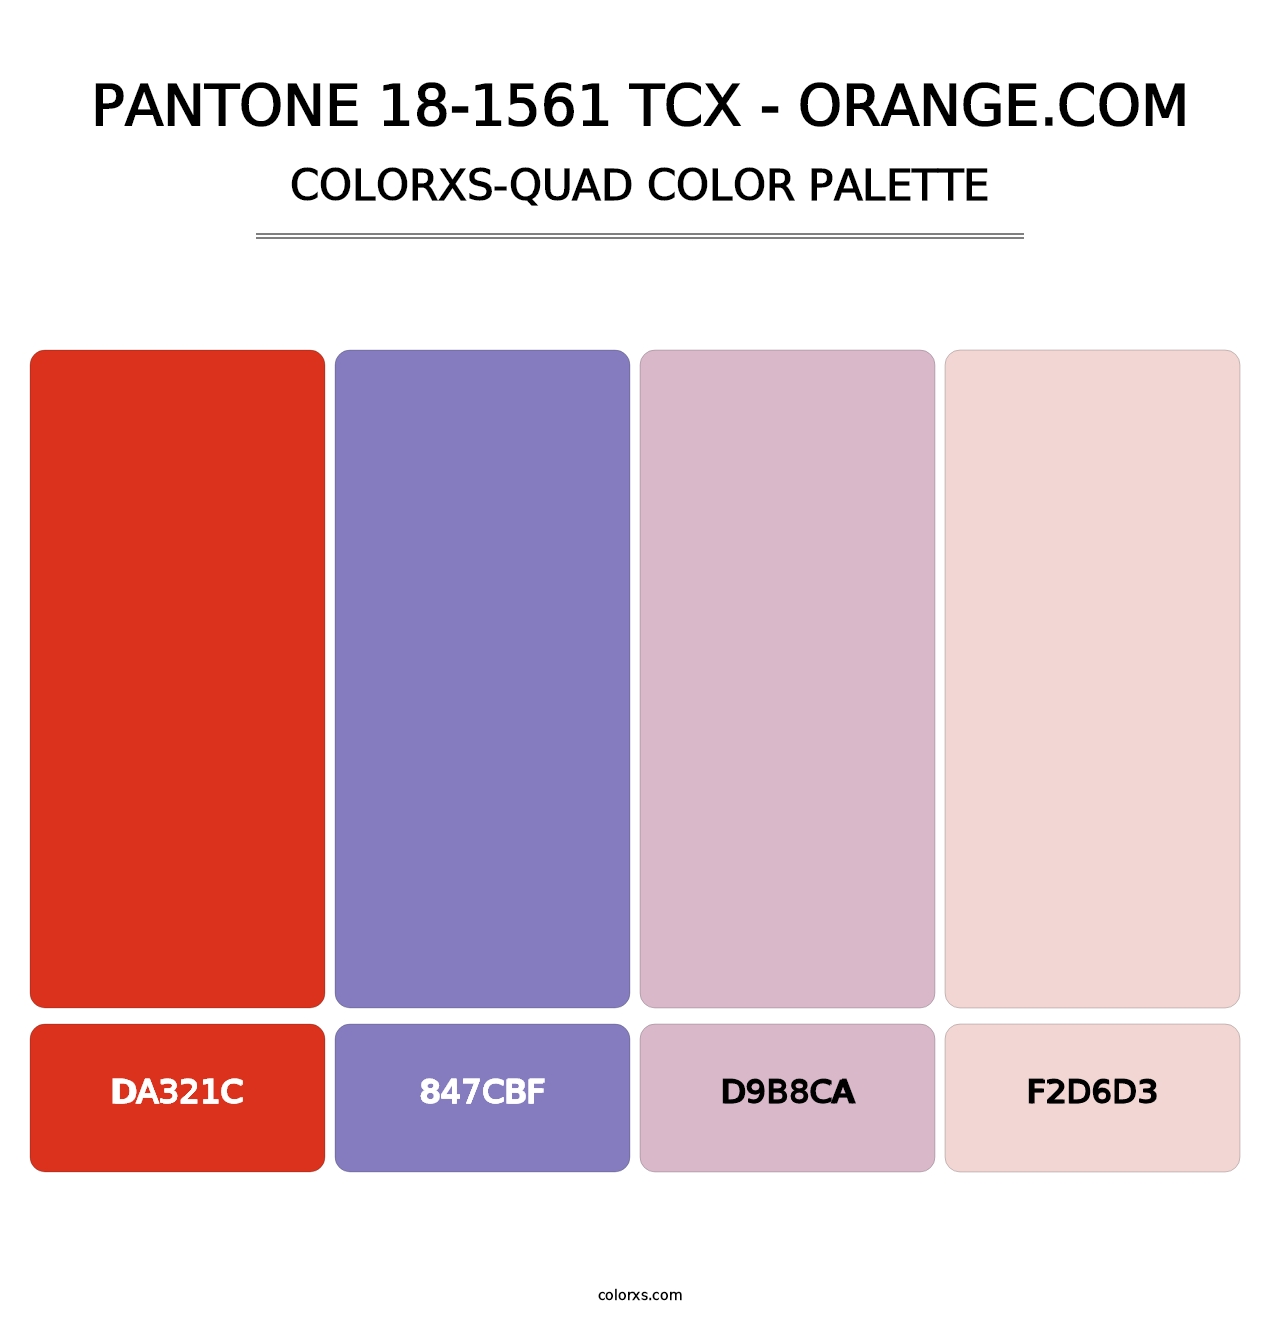 PANTONE 18-1561 TCX - Orange.com - Colorxs Quad Palette